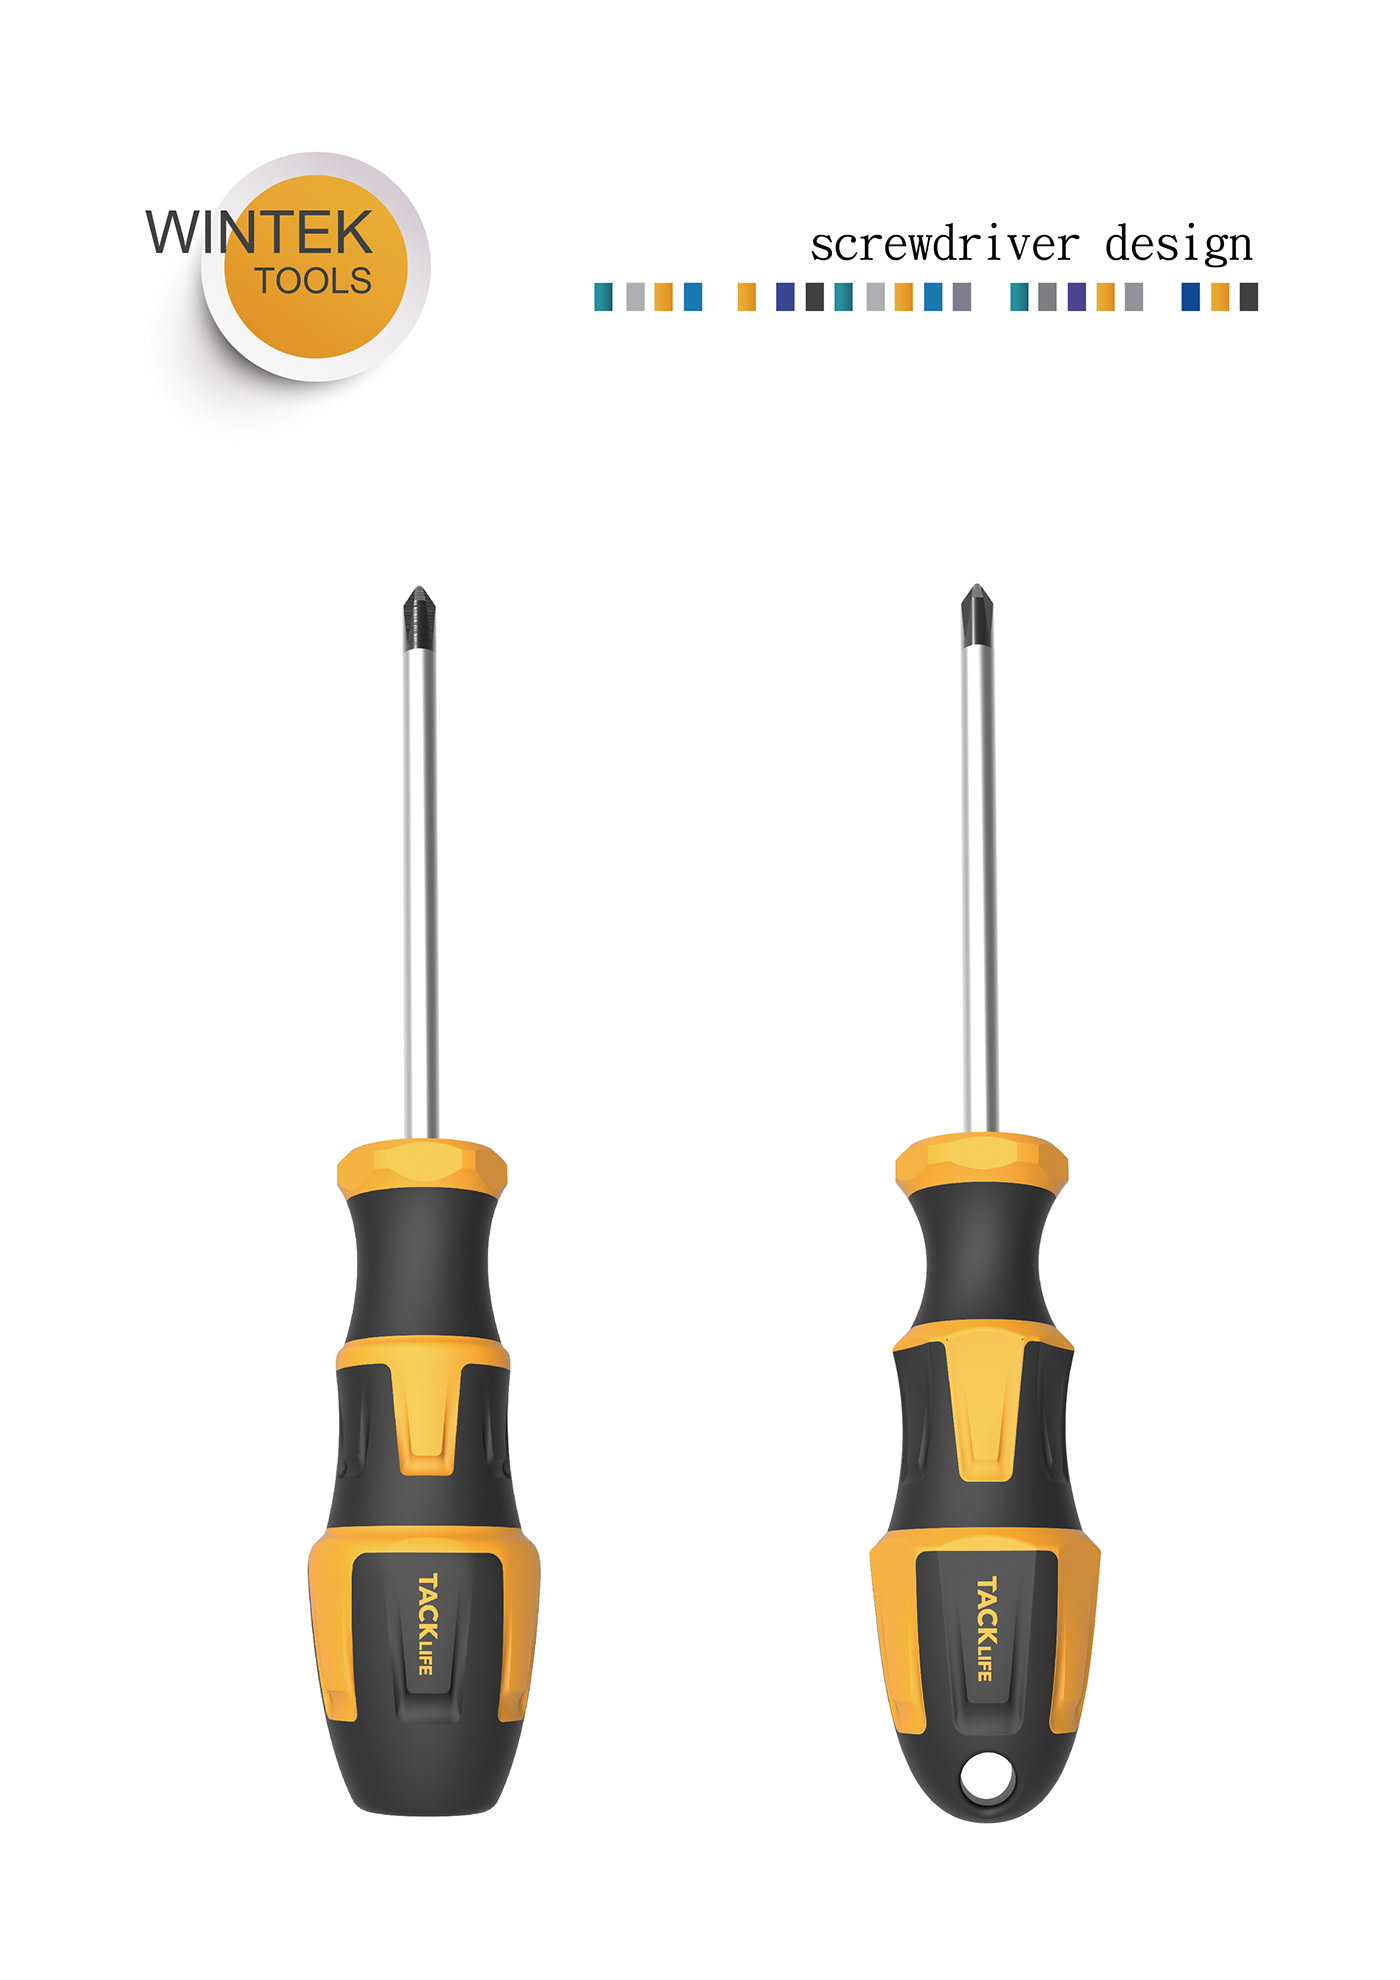 screwdriver tools design Screwdriver design